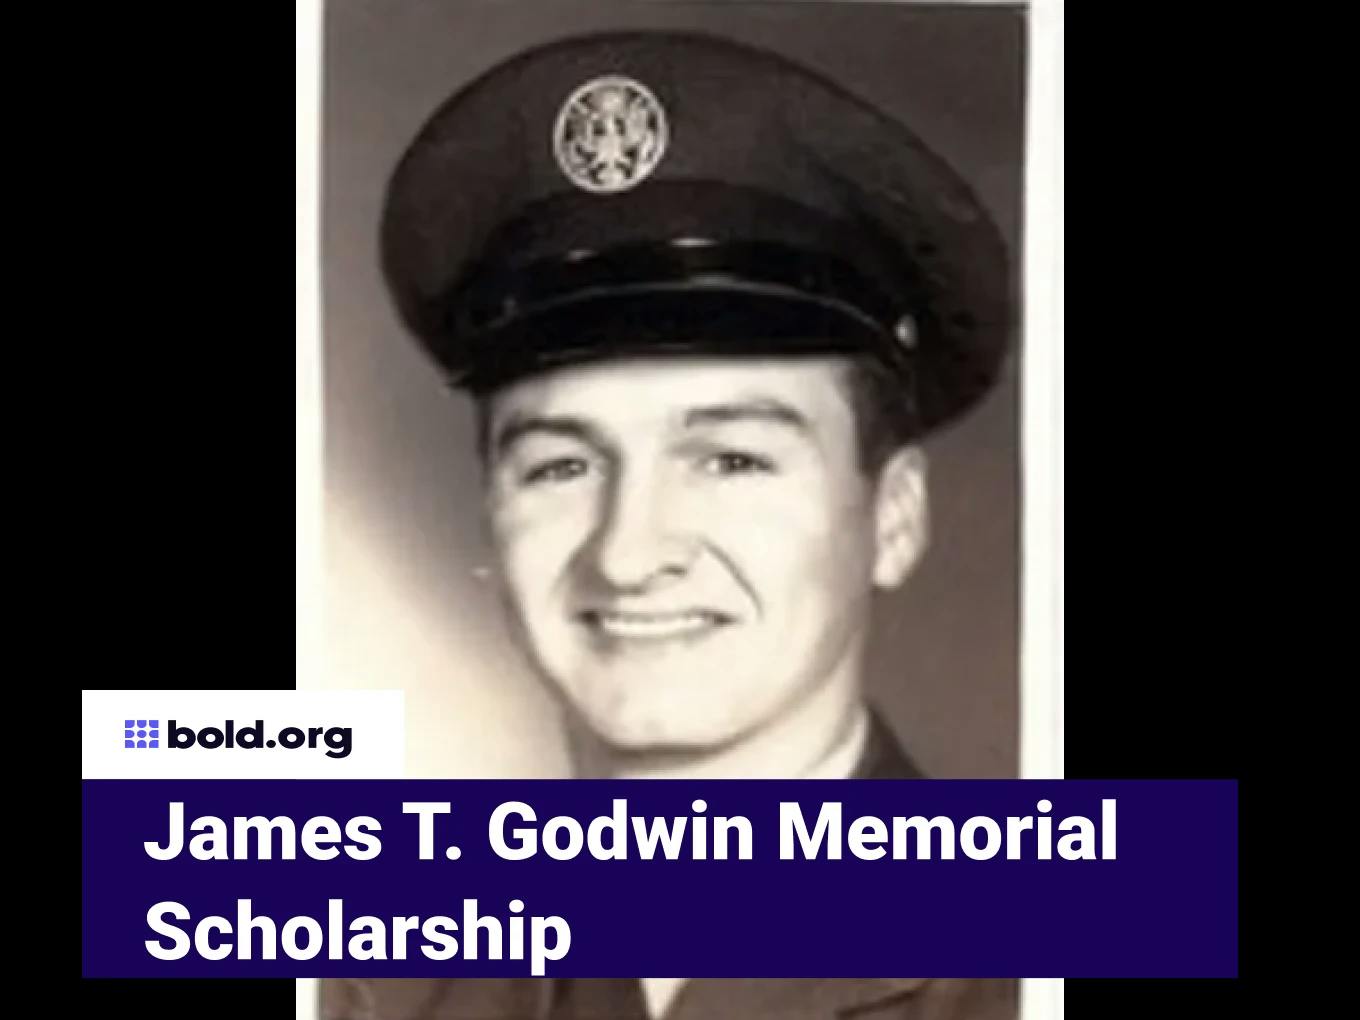 James T. Godwin Memorial Scholarship